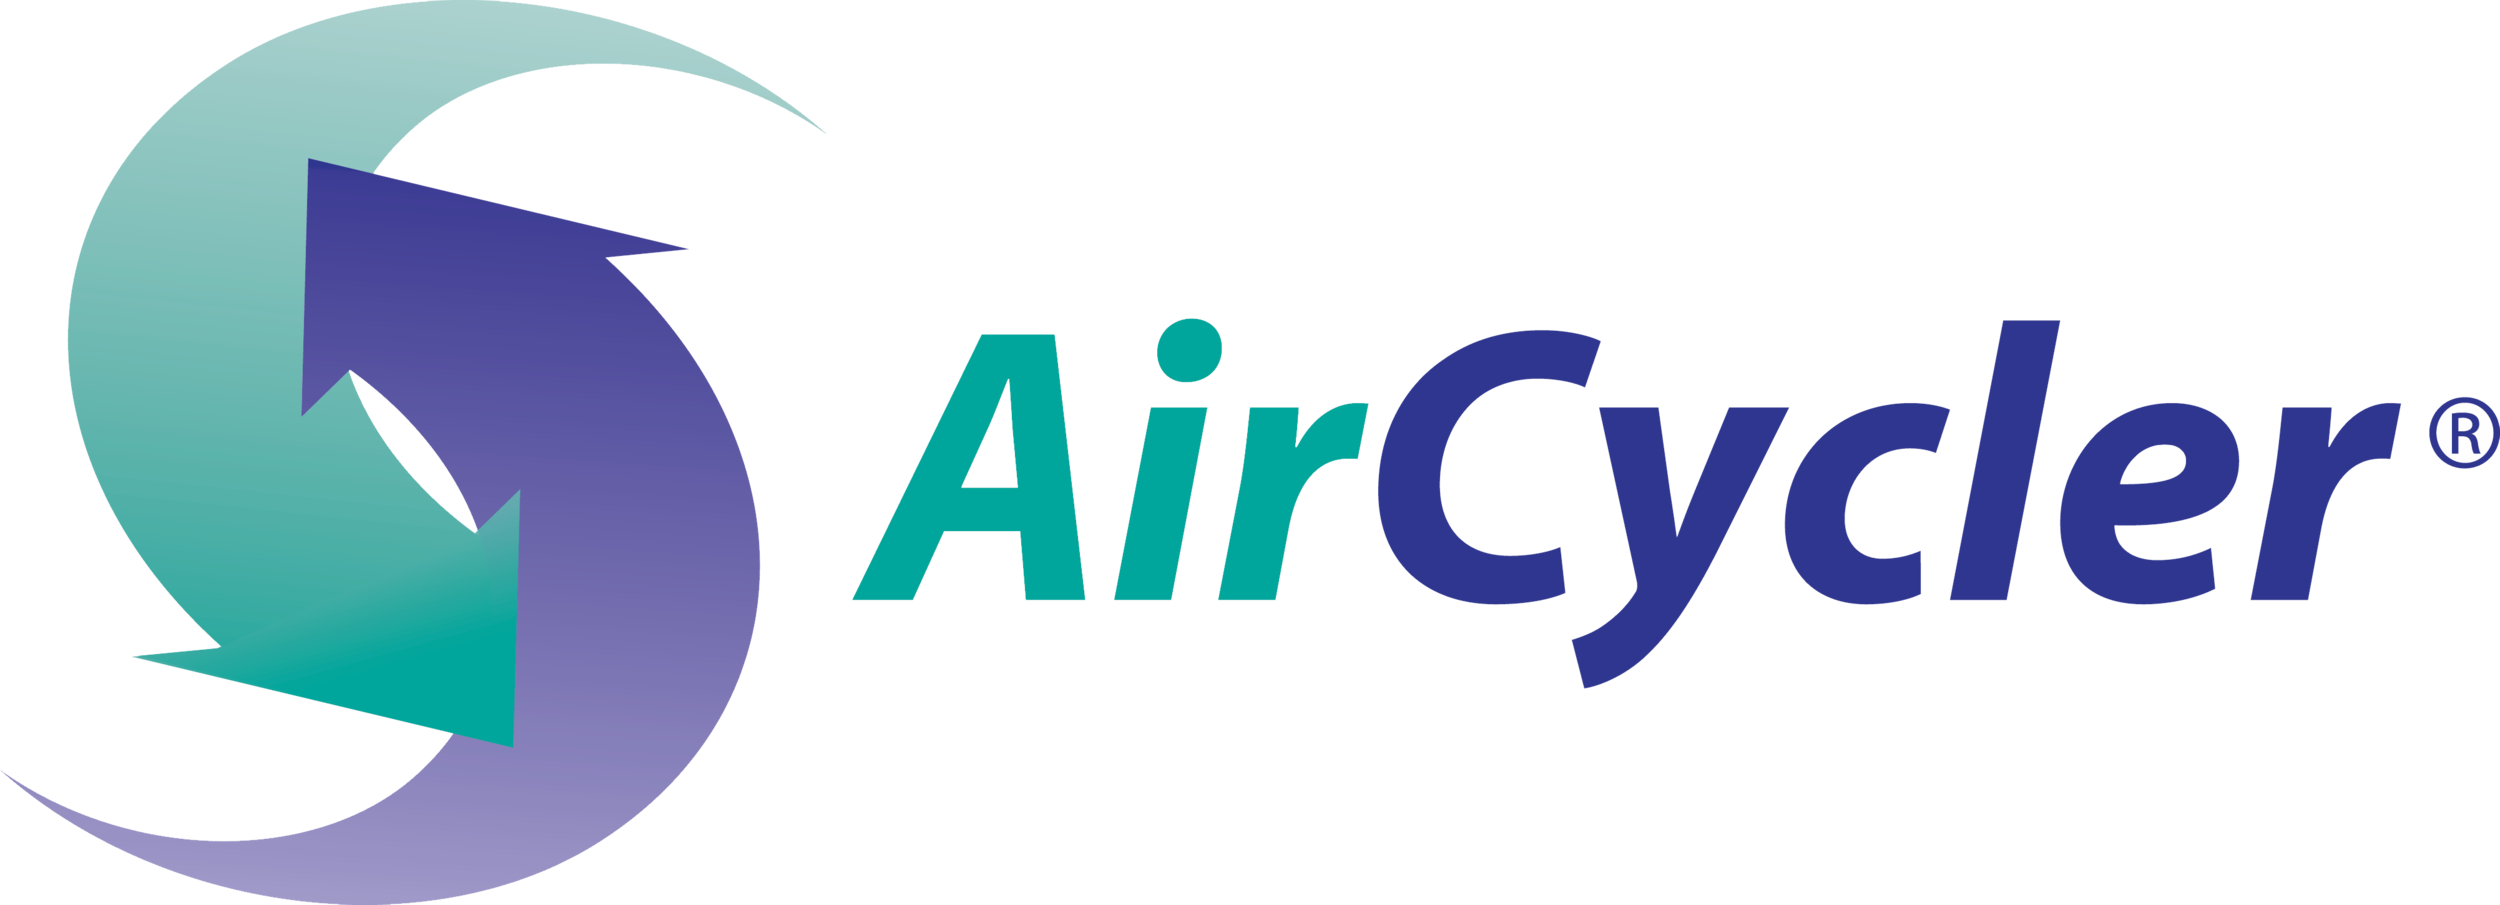 AirCycler